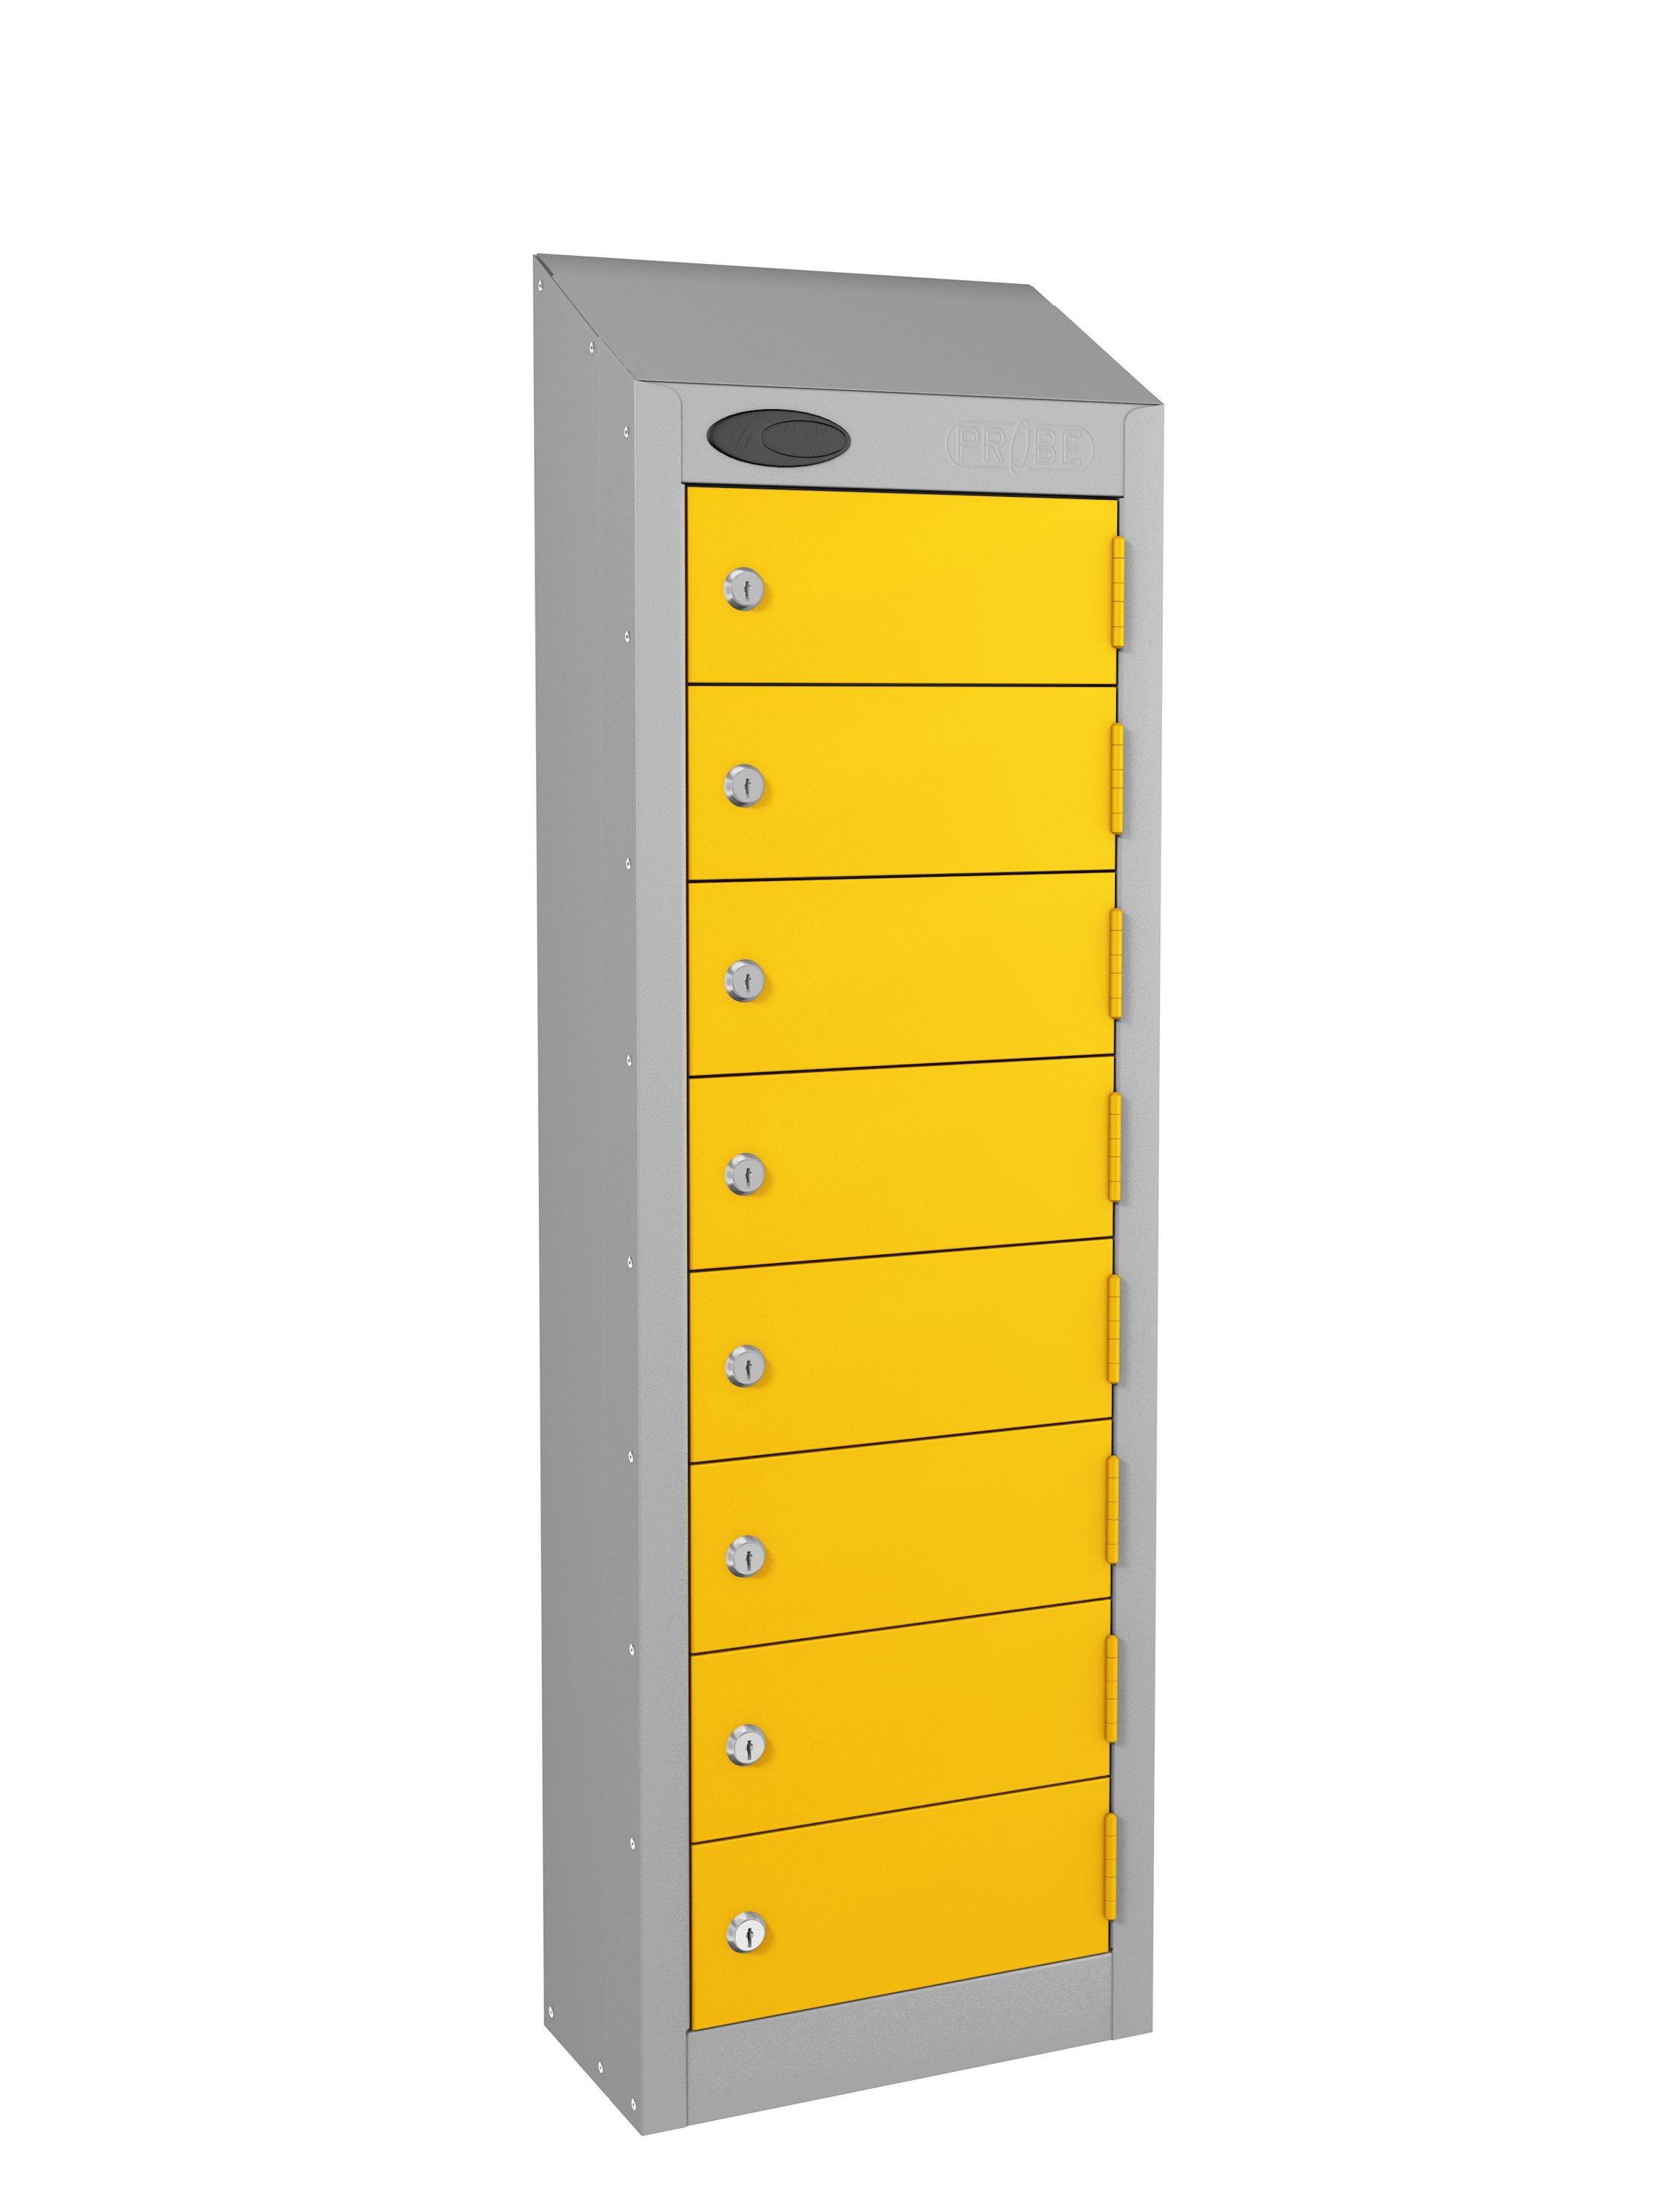 https://lockersukblog.files.wordpress.com/2017/10/8_door_wallet_locker_5_yellow.jpg